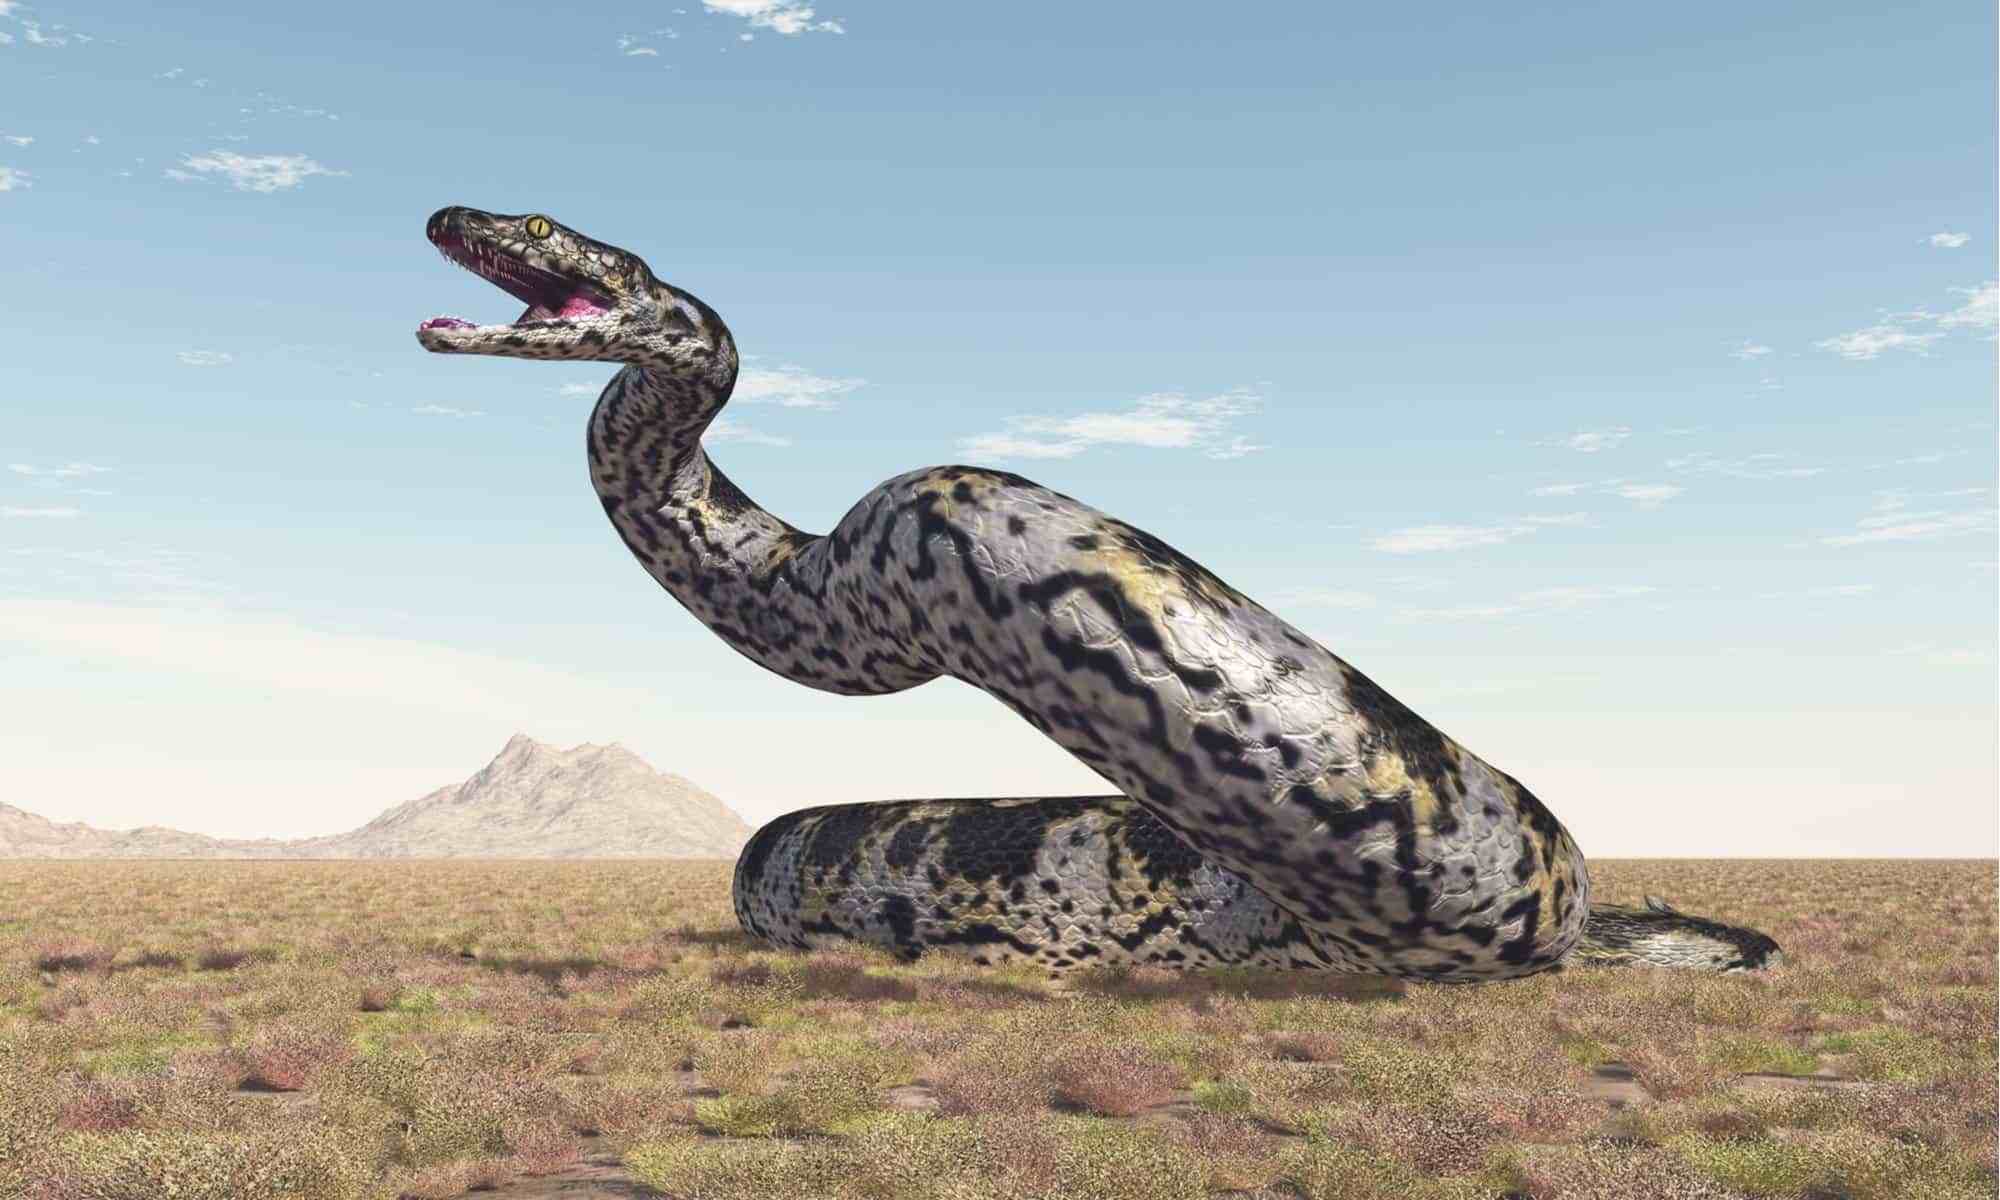 十大远古巨蛇图片